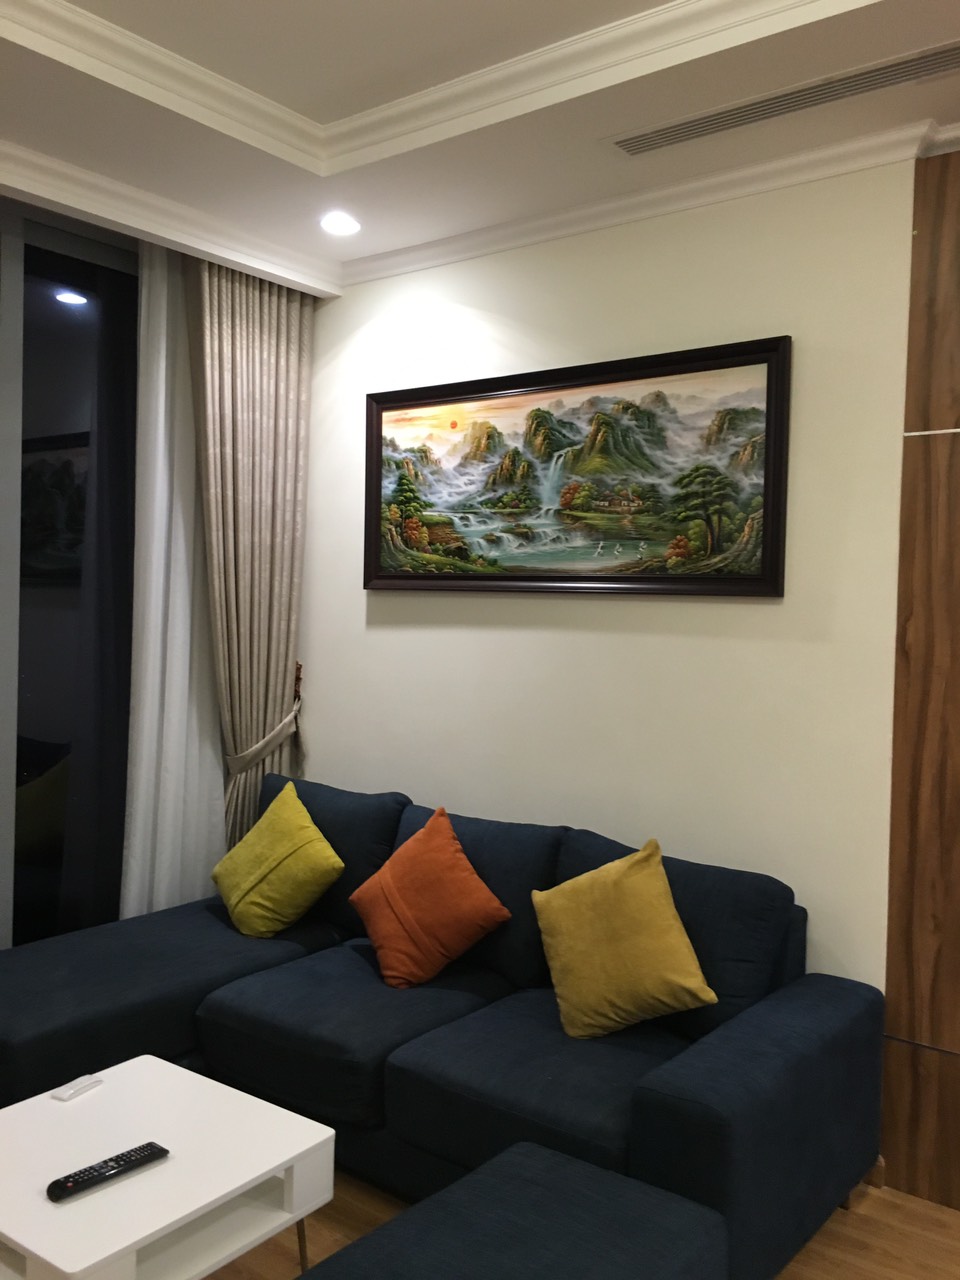 Cho thuê căn hộ cao cấp tại Vinhomes Nguyễn Chí Thanh | 86m2, 2PN, Full Nội thất cao cấp, giá 32 tr/th LH 0903.404.072